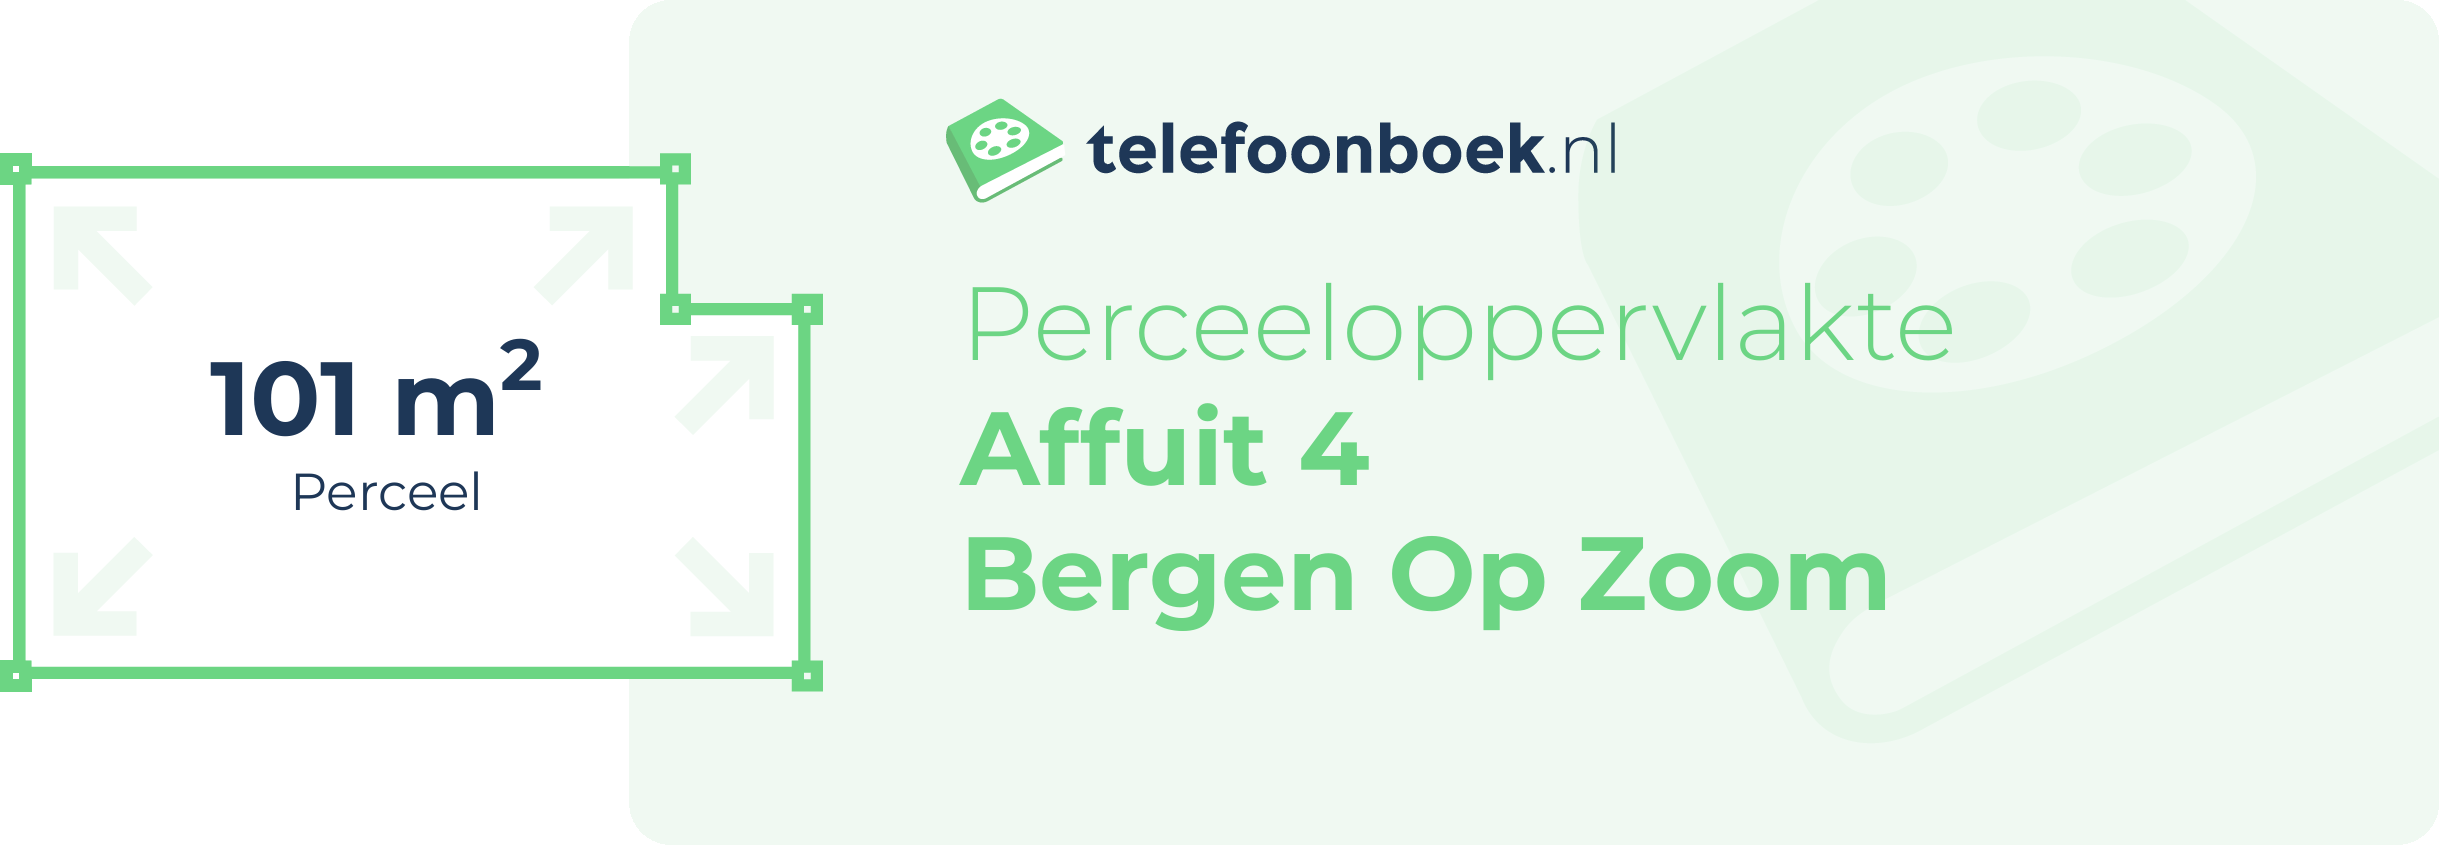 Perceeloppervlakte Affuit 4 Bergen Op Zoom